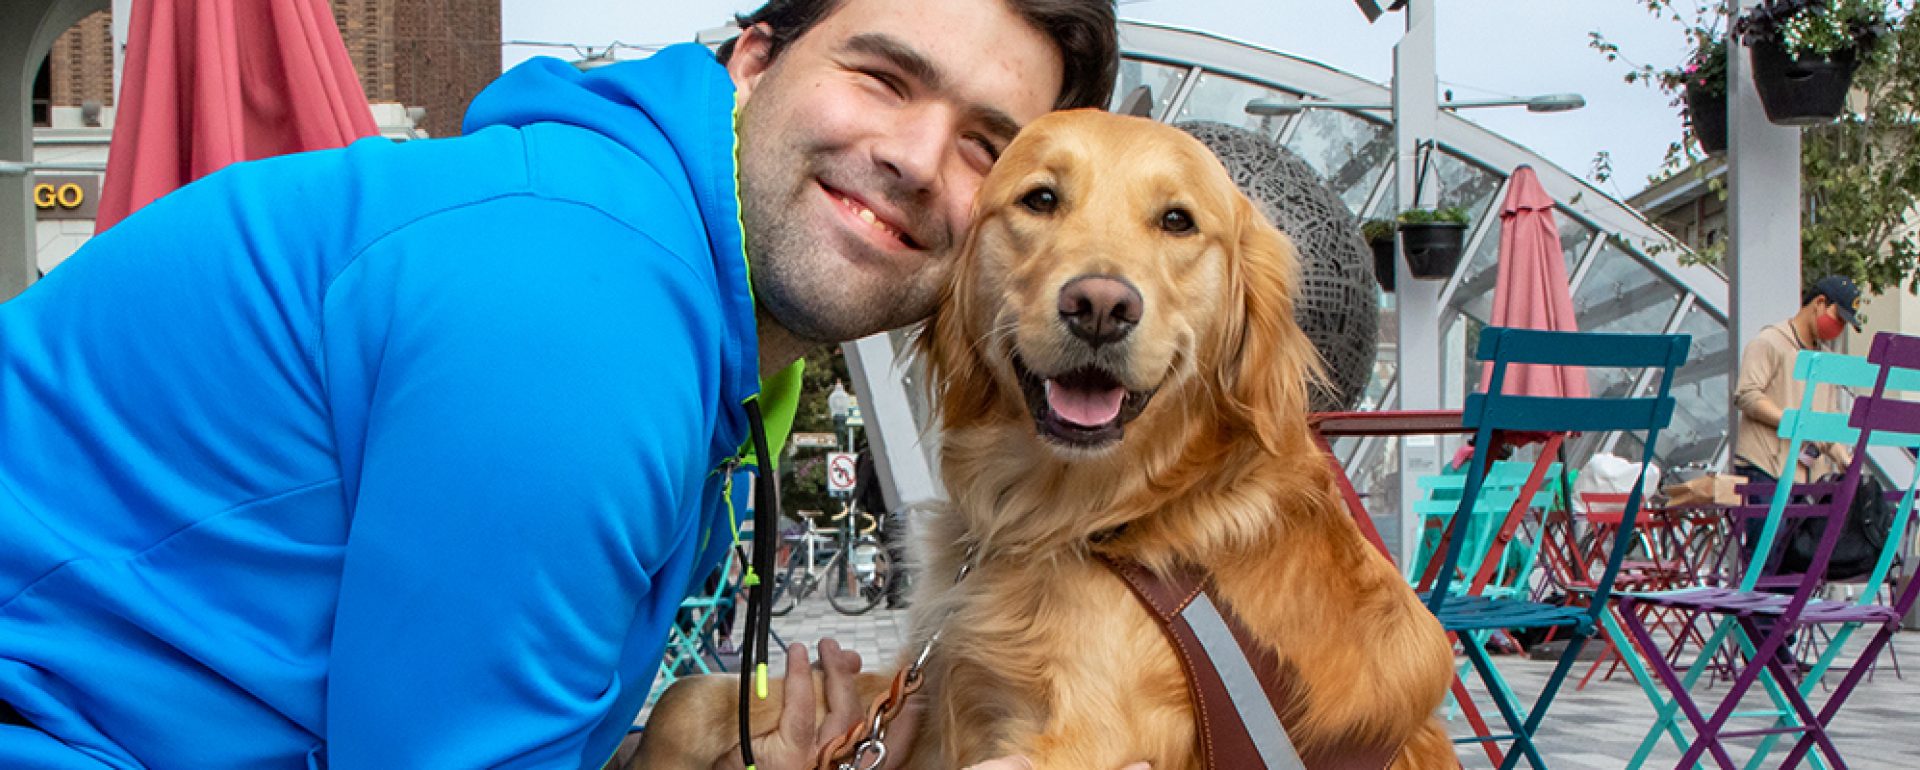 A man and a Golden Retriever guide dog